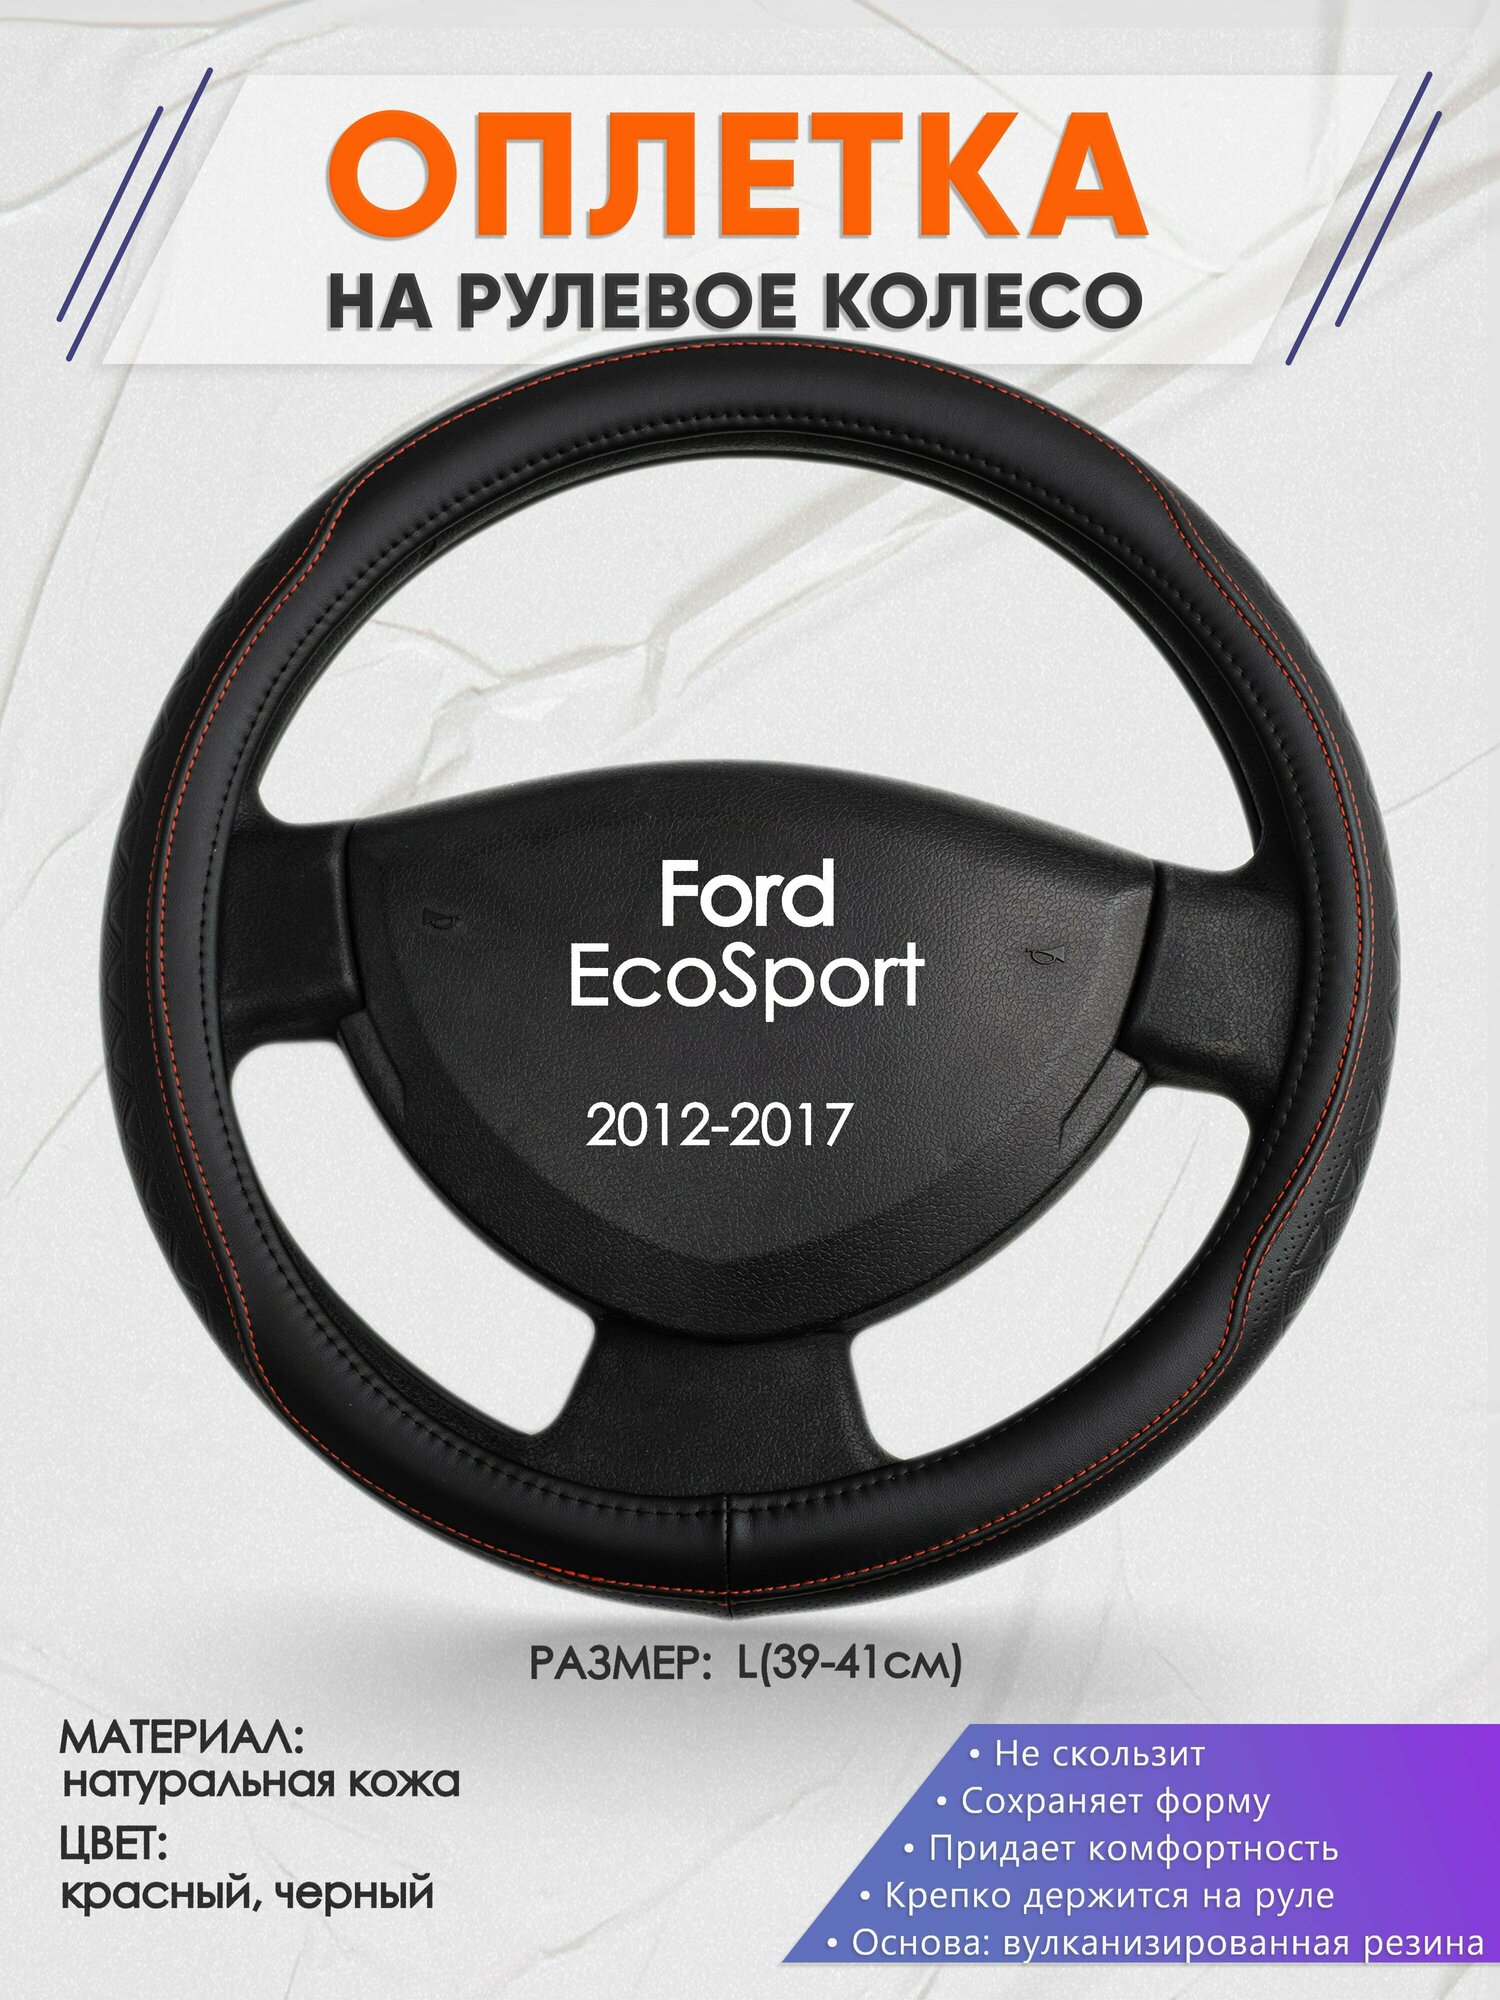 Оплетка на руль для Ford EcoSport (Форд Экоспорт) 2012-2017 L(39-41см) Натуральная кожа 89